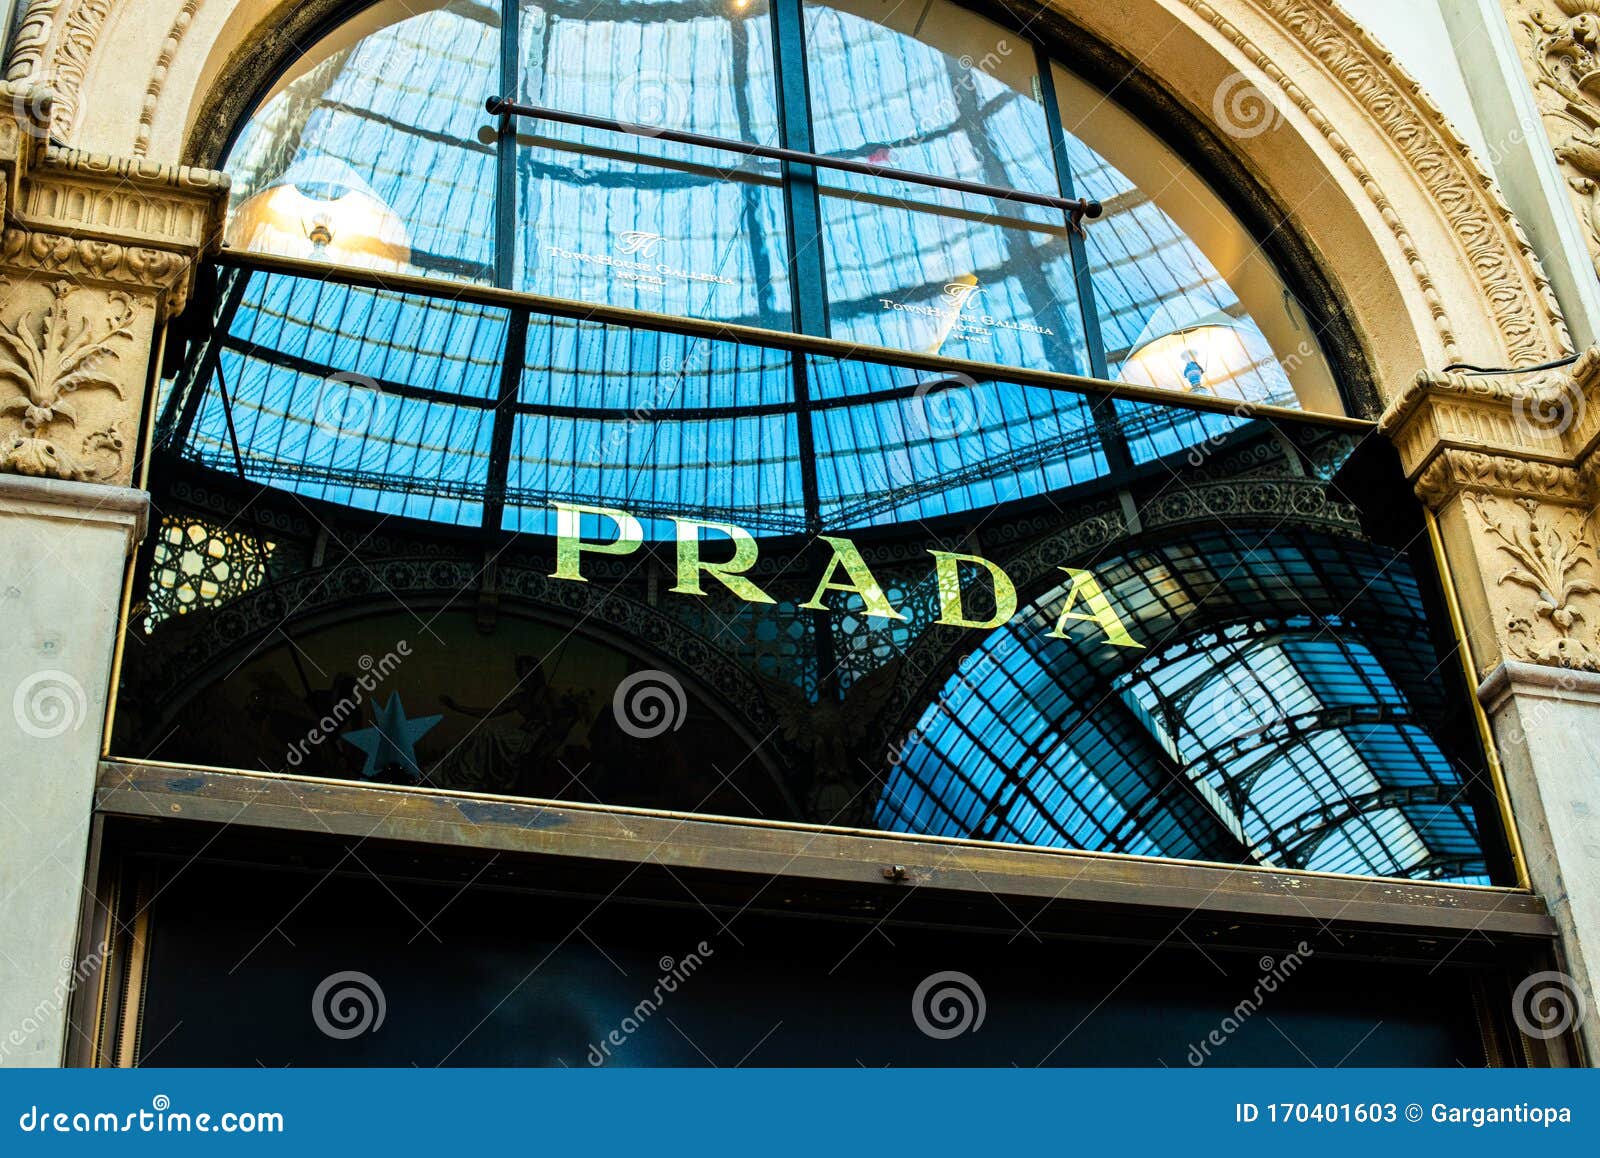 Prada shop. Galleria Vittorio Emanuele II. Milan, Italy Stock